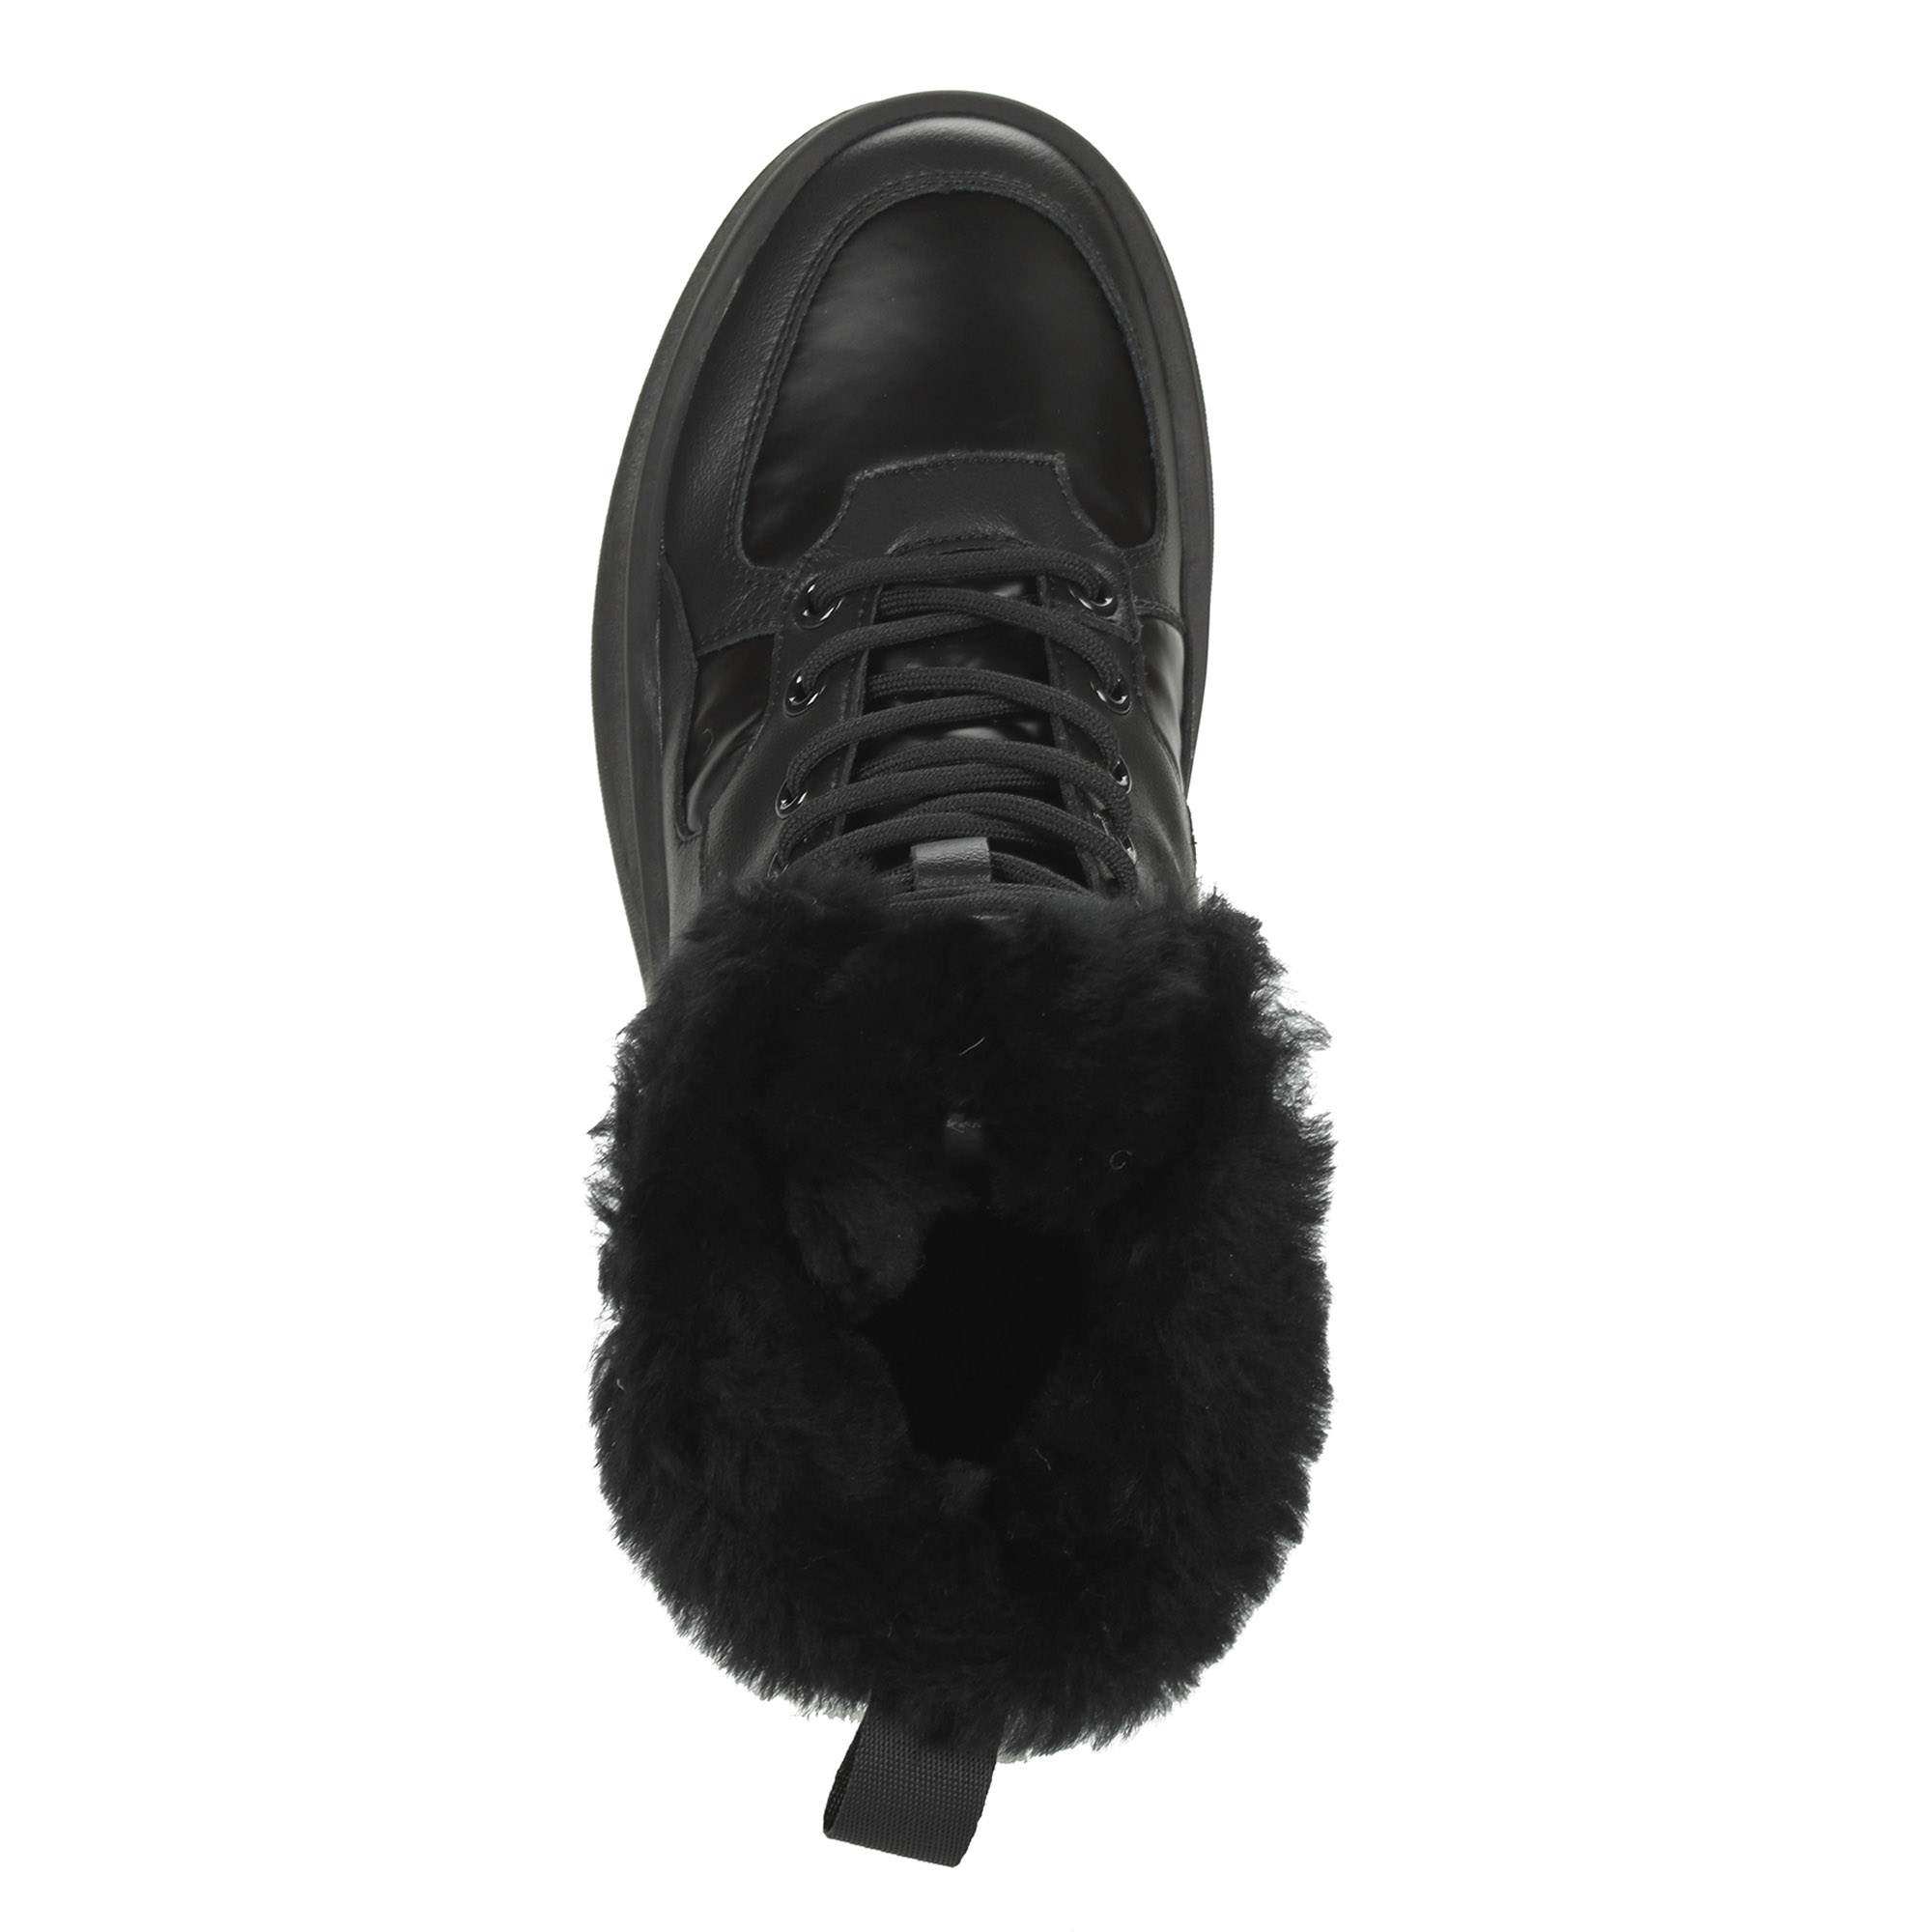 Черные высокие кроссовки из комбинированных материалов смеховой опушкой на подкладке из натуральной шерсти на утолщенной платформе Respect, размер 39, цвет черный - фото 7